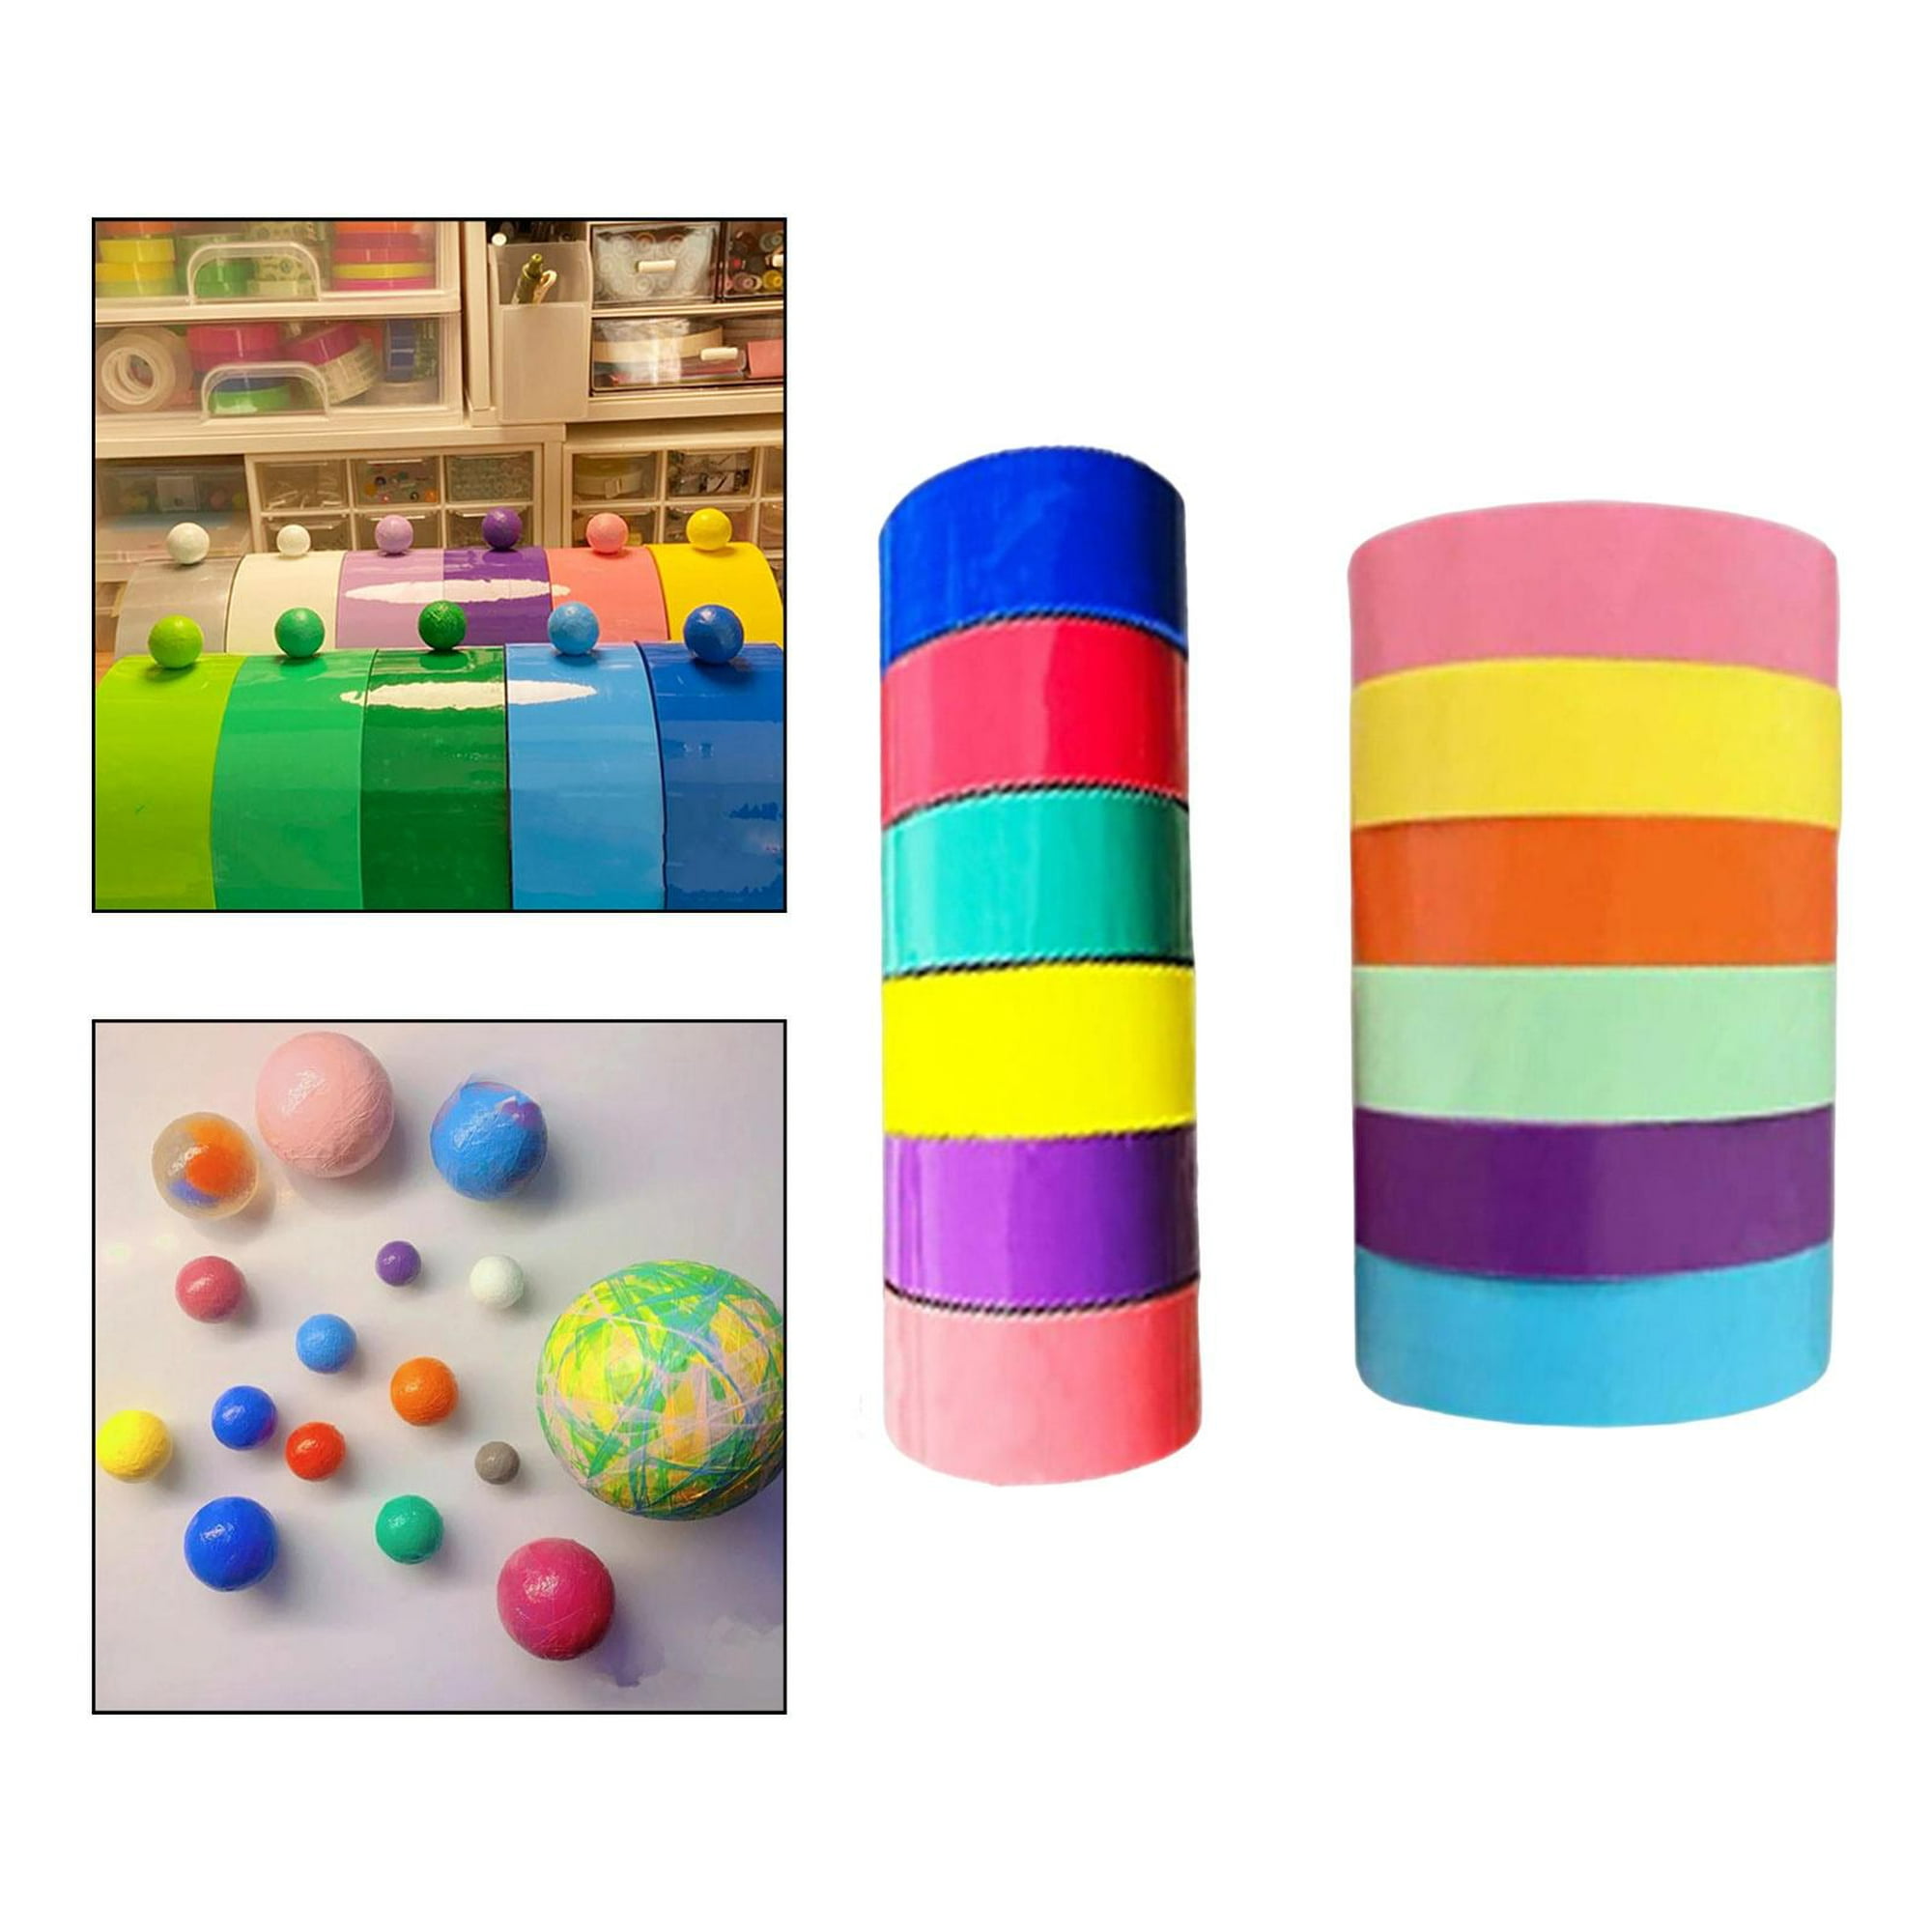 Cintas adhesivas de colores Cinta adhesiva de colores Juguetes para niños  12 rollos Cinta adhesiva de plástico Cinta dedicada Juguetes para niños